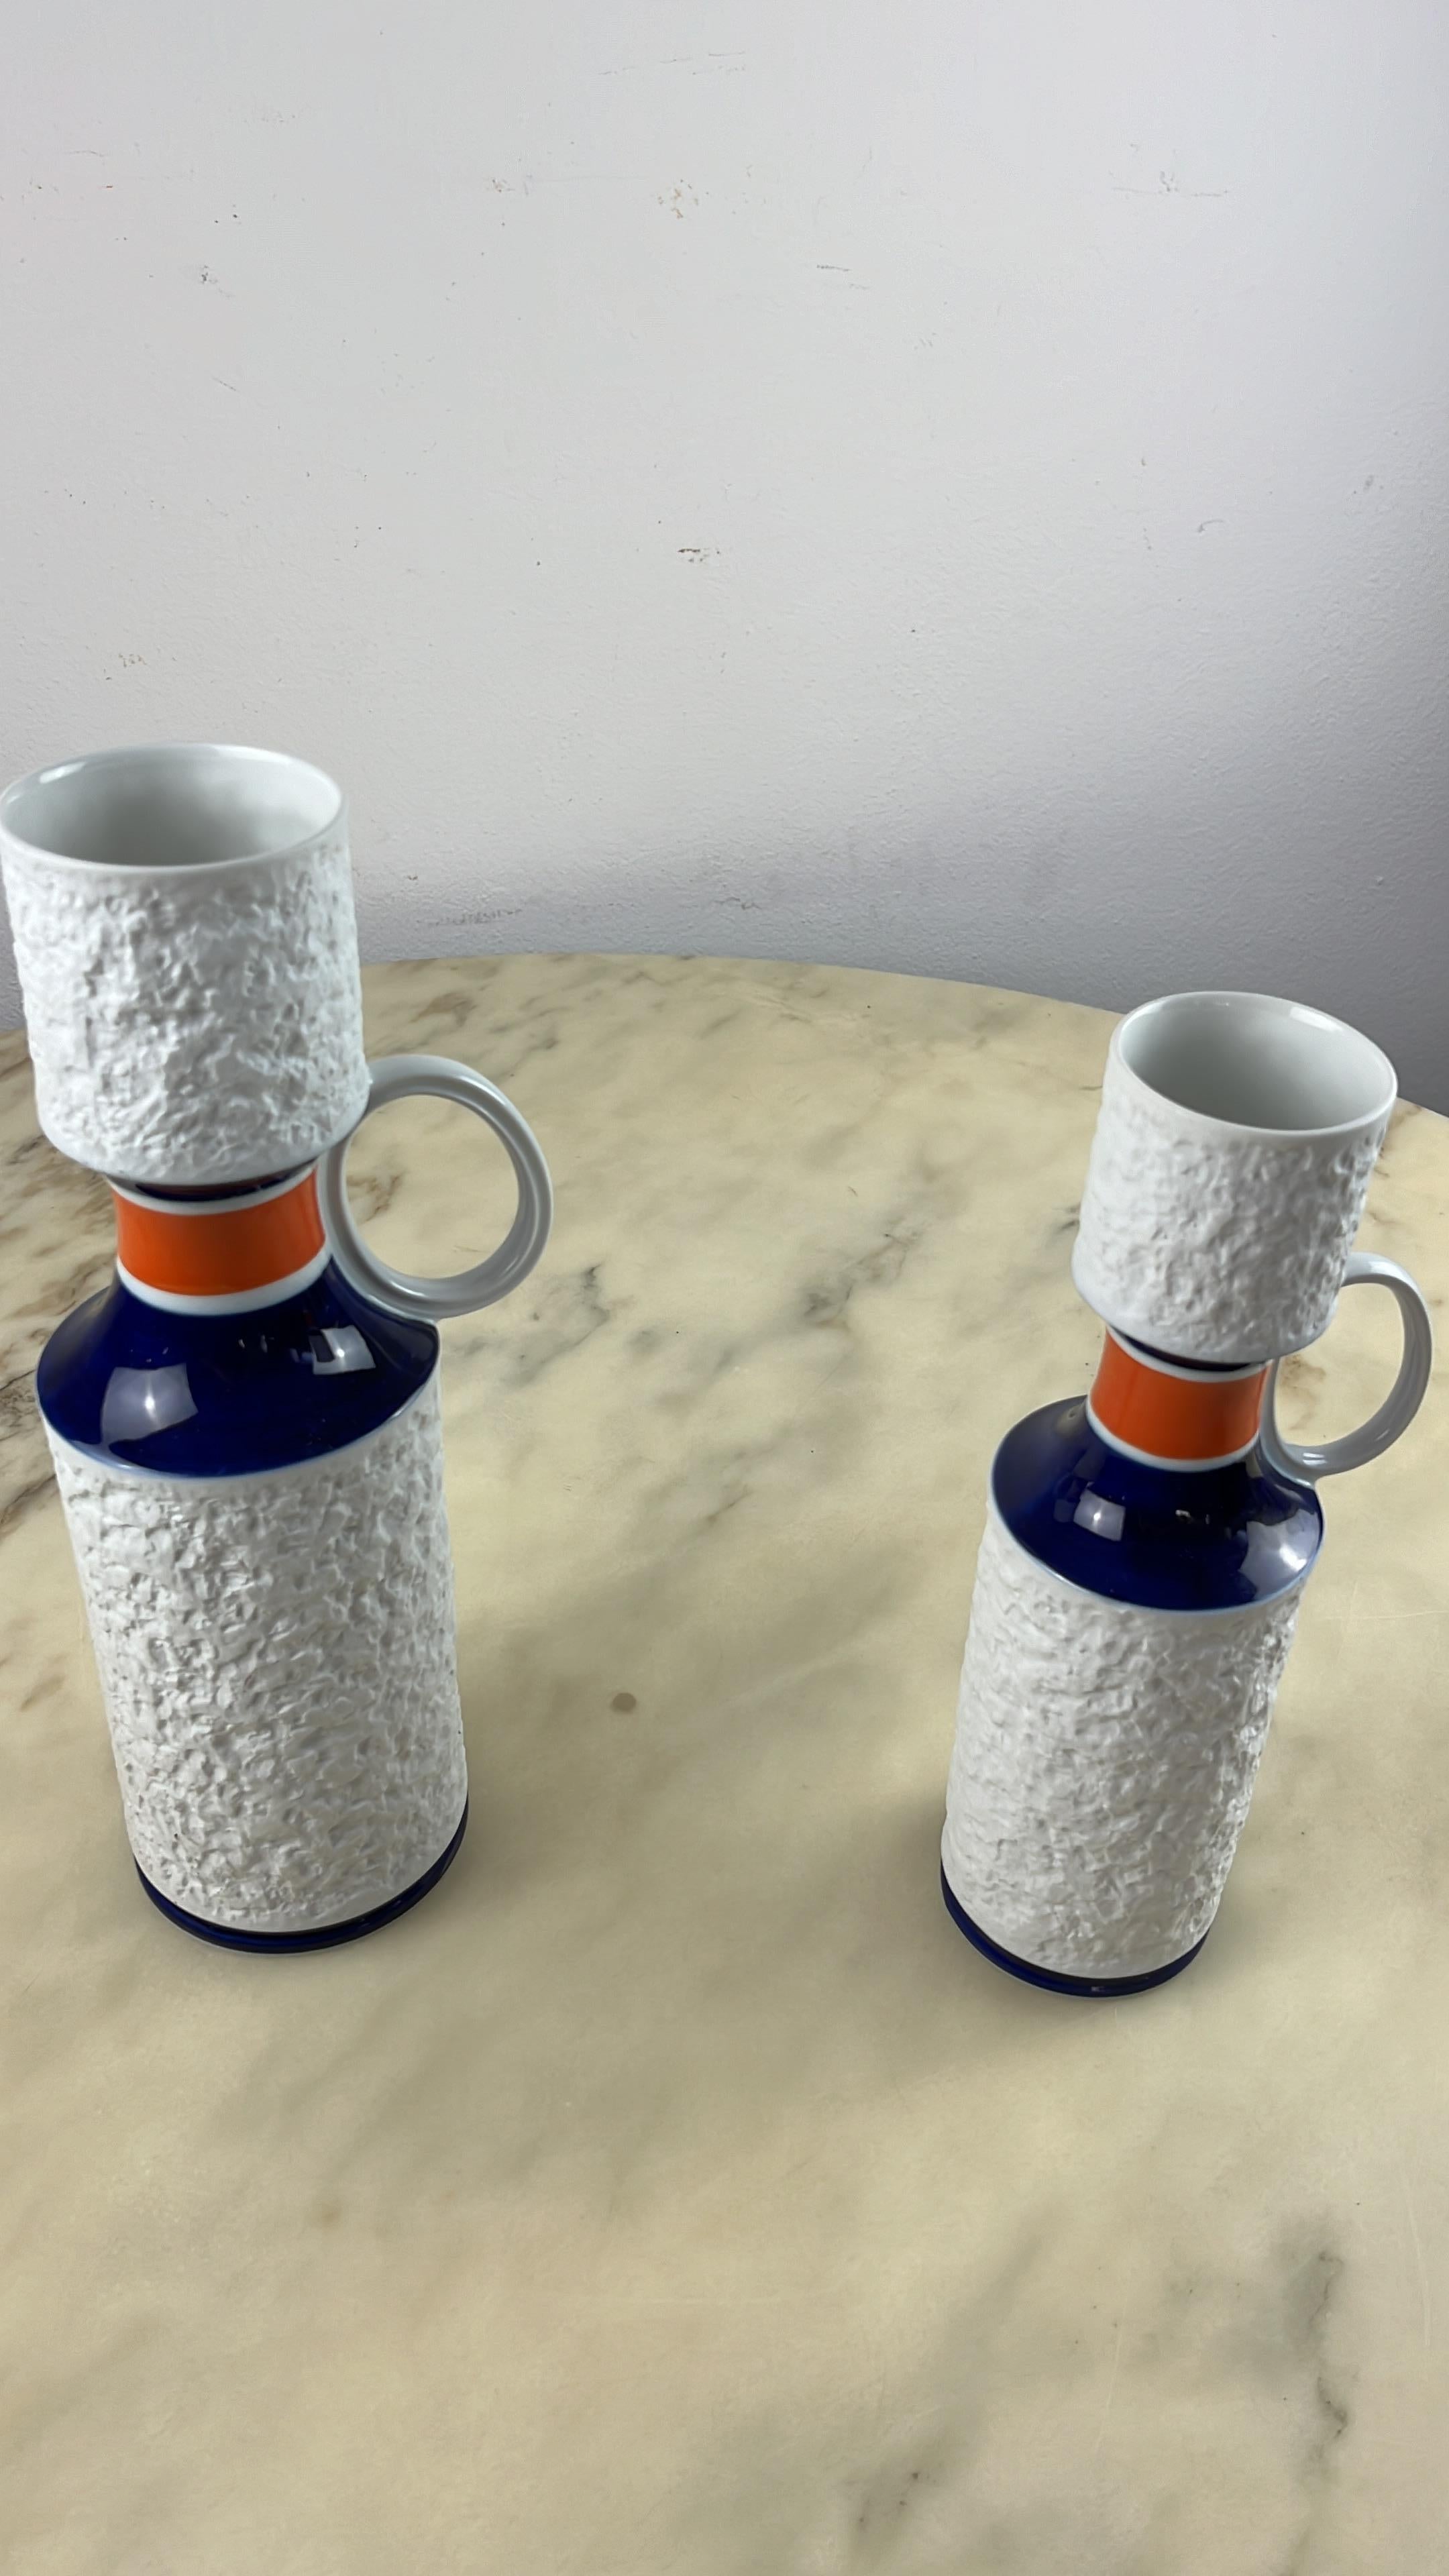 Paar Vasen aus KPM-Biskuitporzellan, Deutschland, 1960er Jahre
Königliche Porzellan-Manufaktur (KPM).
Intakt und in gutem Zustand.
Der größte ist 34 cm hoch und hat einen Durchmesser von 10 cm; der kleine ist 29 cm hoch und hat einen Durchmesser von